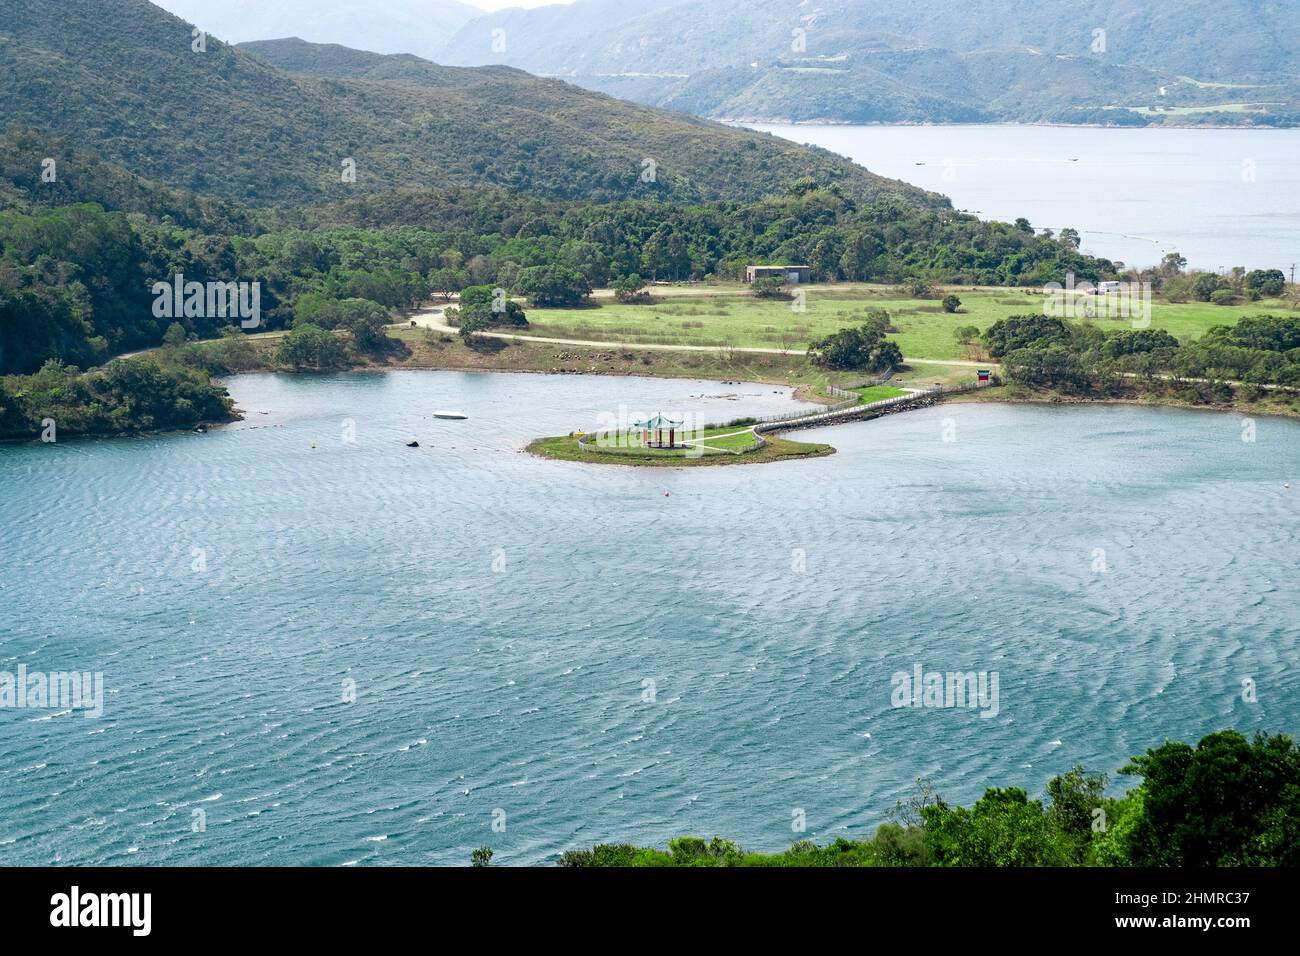 Vue sur le paysage avec l'île qui a pavillon chinois au milieu à High Island Reservoir, Sai Kung, Hong Kong Banque D'Images